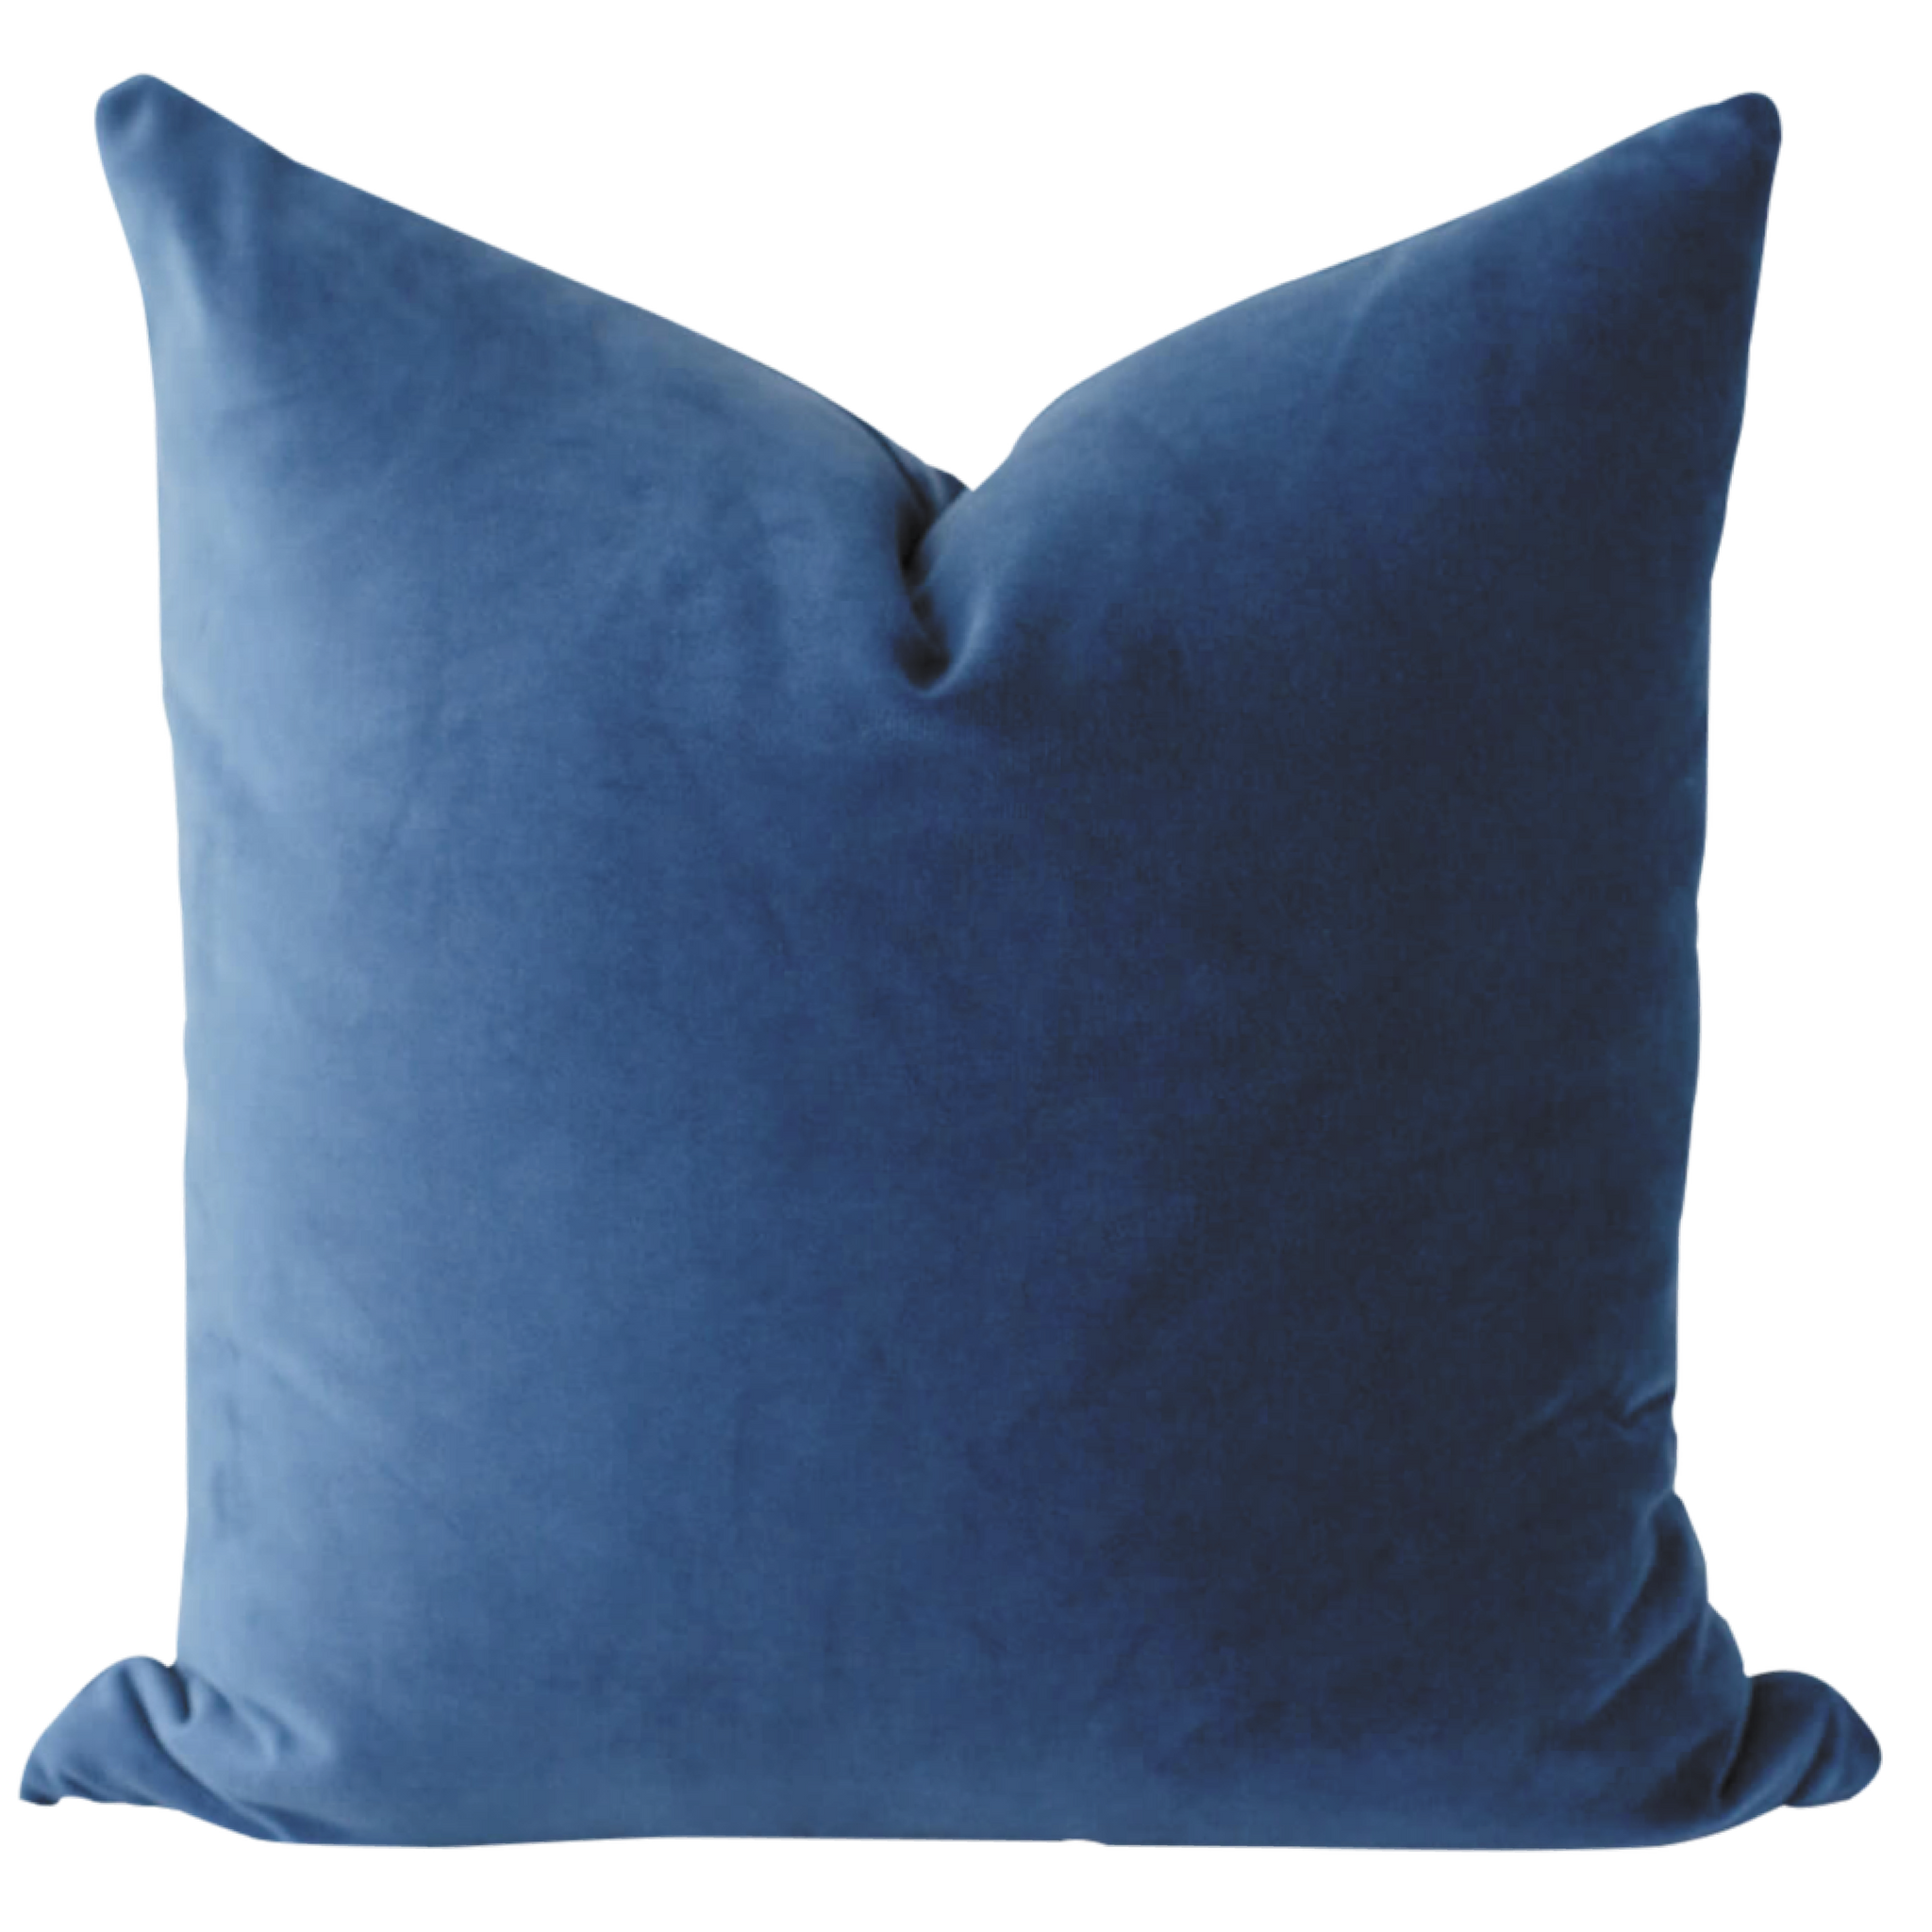 Velvet Pillow Cover - Blush